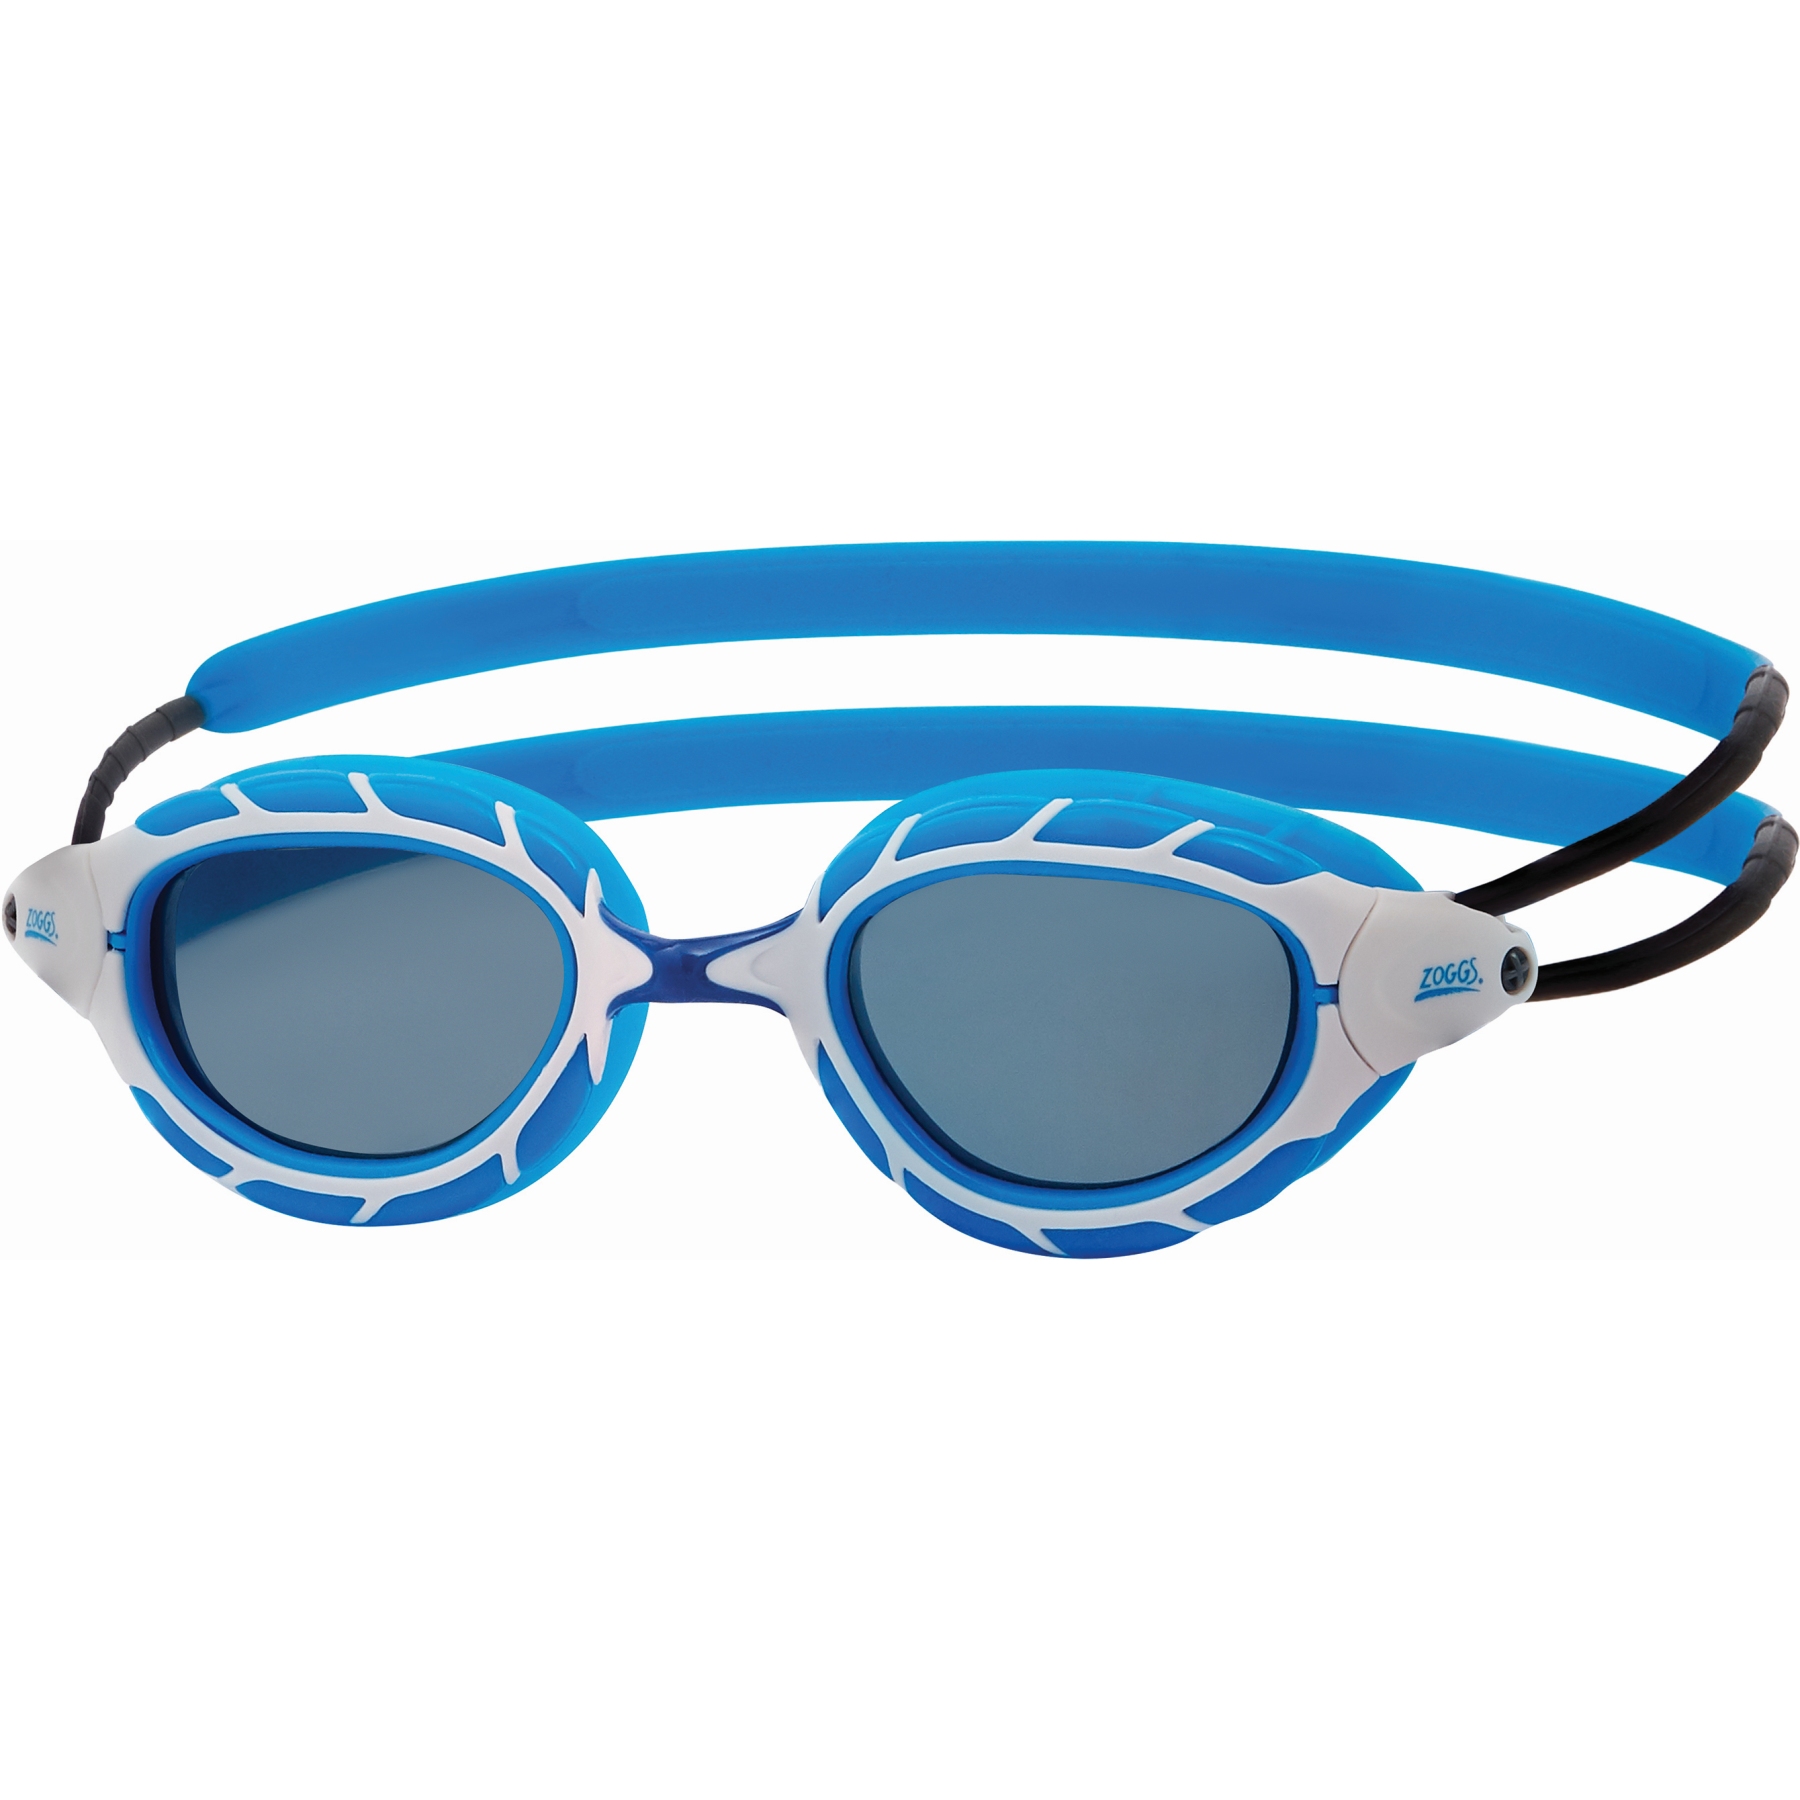 Produktbild von Zoggs Predator Schwimmbrille - Getönte Gläser: Smoke - Regular Fit - Blau/Weiß